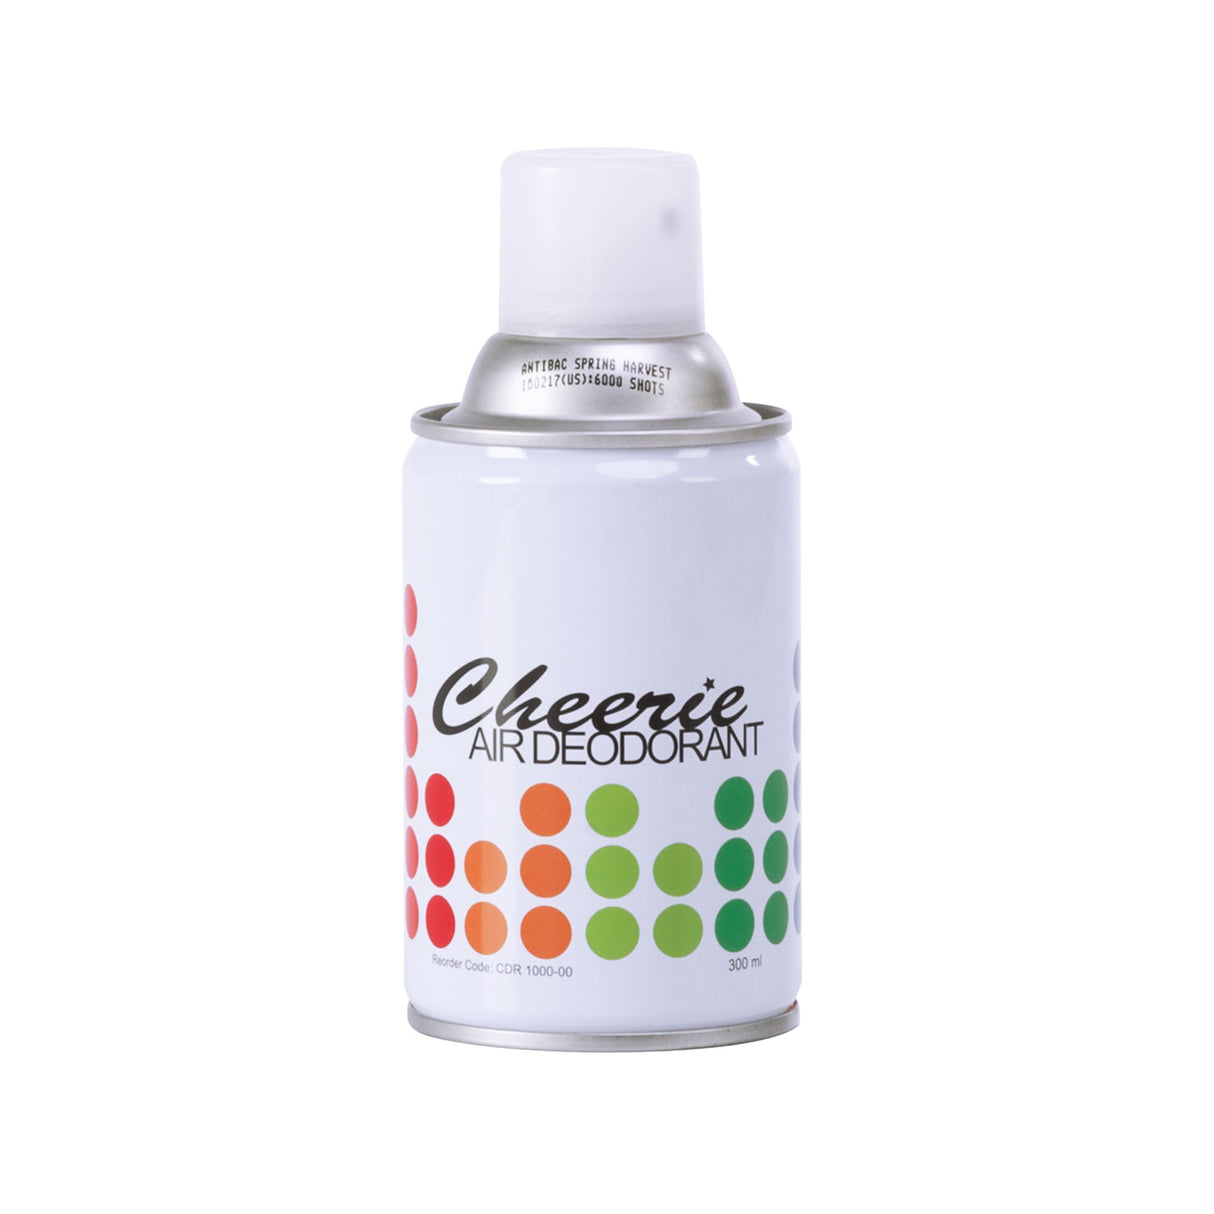 Cheerie® Air Deodorant Metered Aerosol Can 6000 shots  1 box x 10 cans